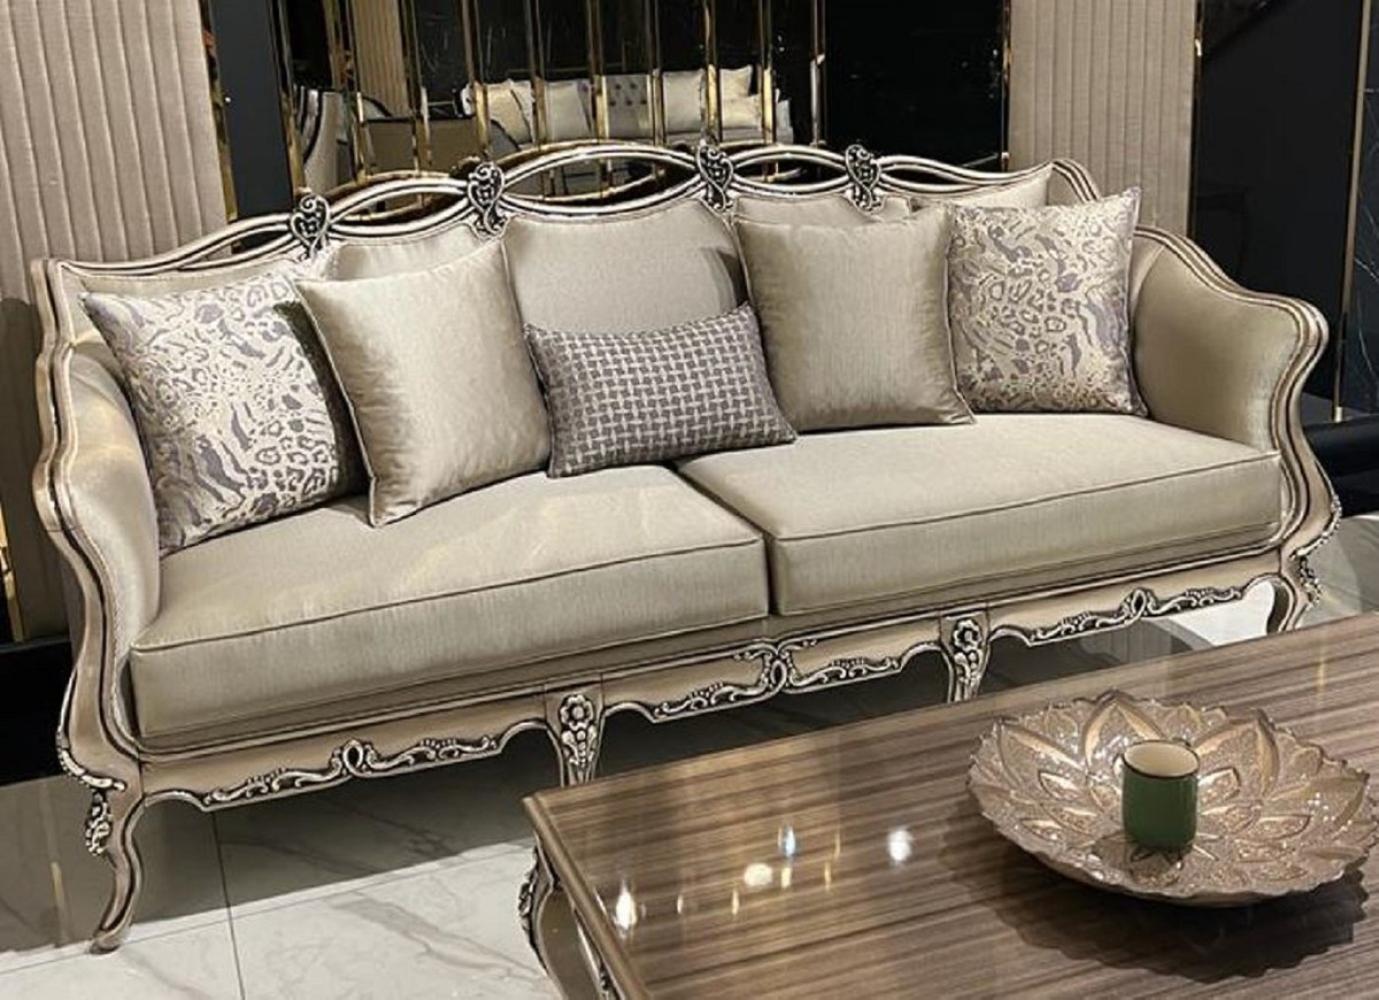 Casa Padrino Luxus Barock Sofa Gold / Lila / Gold - Handgefertigtes Wohnzimmer Sofa mit dekorativen Kissen - Wohnzimmer Möbel im Barockstil - Edel & Prunkvoll Bild 1